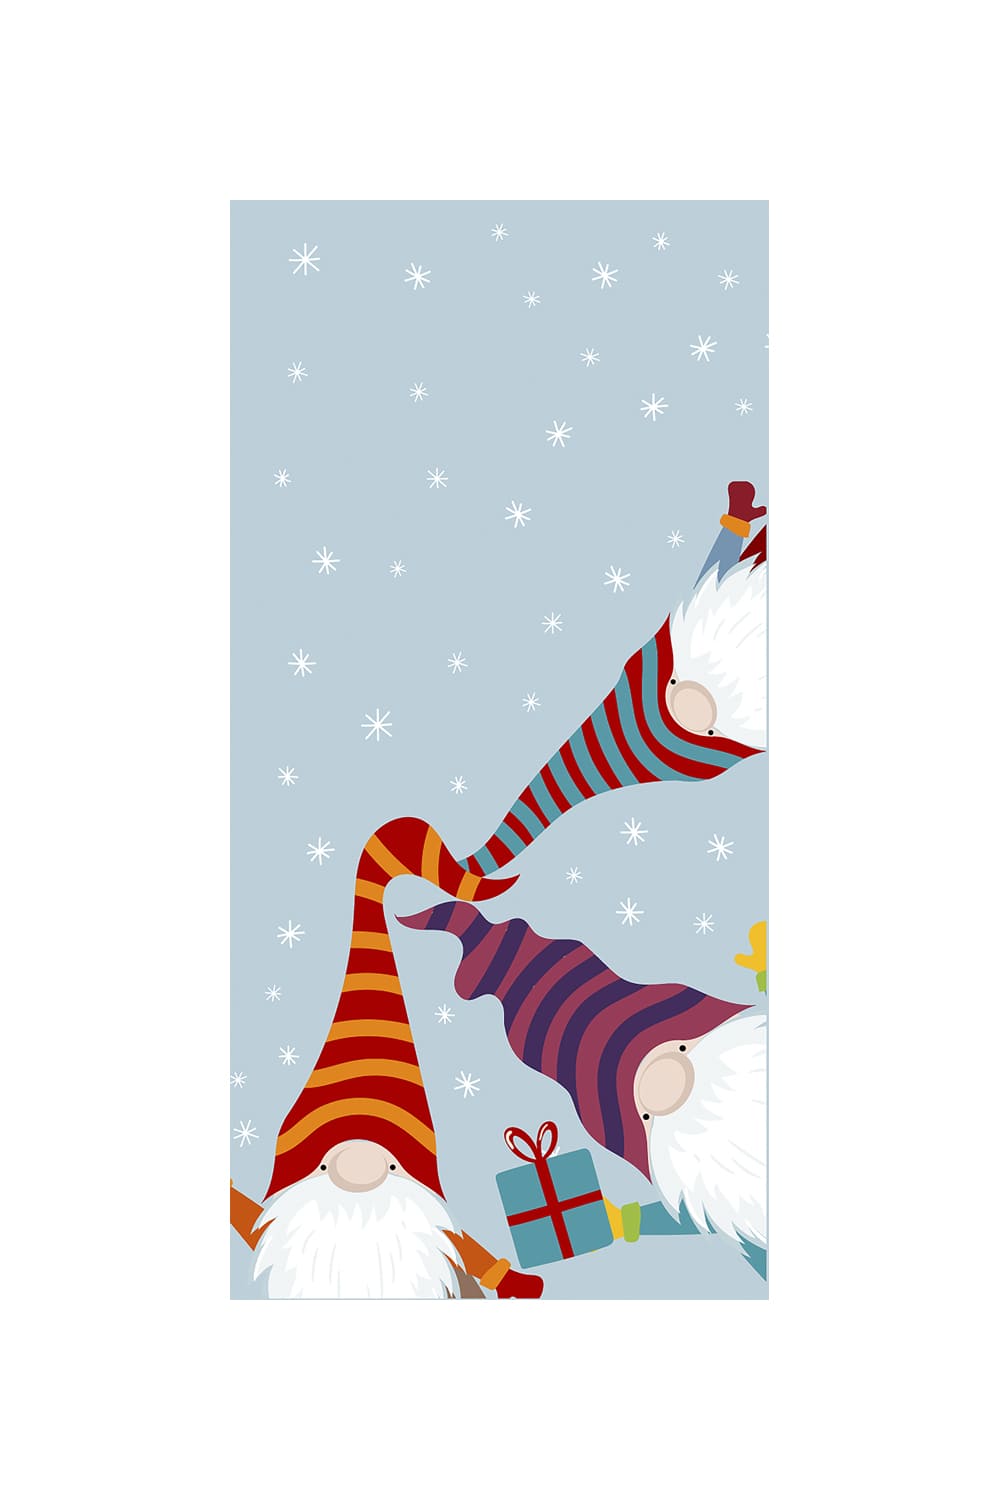 Diese herzigen Wichtel Taschentuecher sorgen fuer viel Freude in der Weihnachtszeit. Ein witziges kleines Geschenk oder Mitbringsel zu Weihnachten und fuer die Adventszeit. Auch perfekt fuer das Befuellen eines Adventskalenders oder als Wichtelgeschenk. 